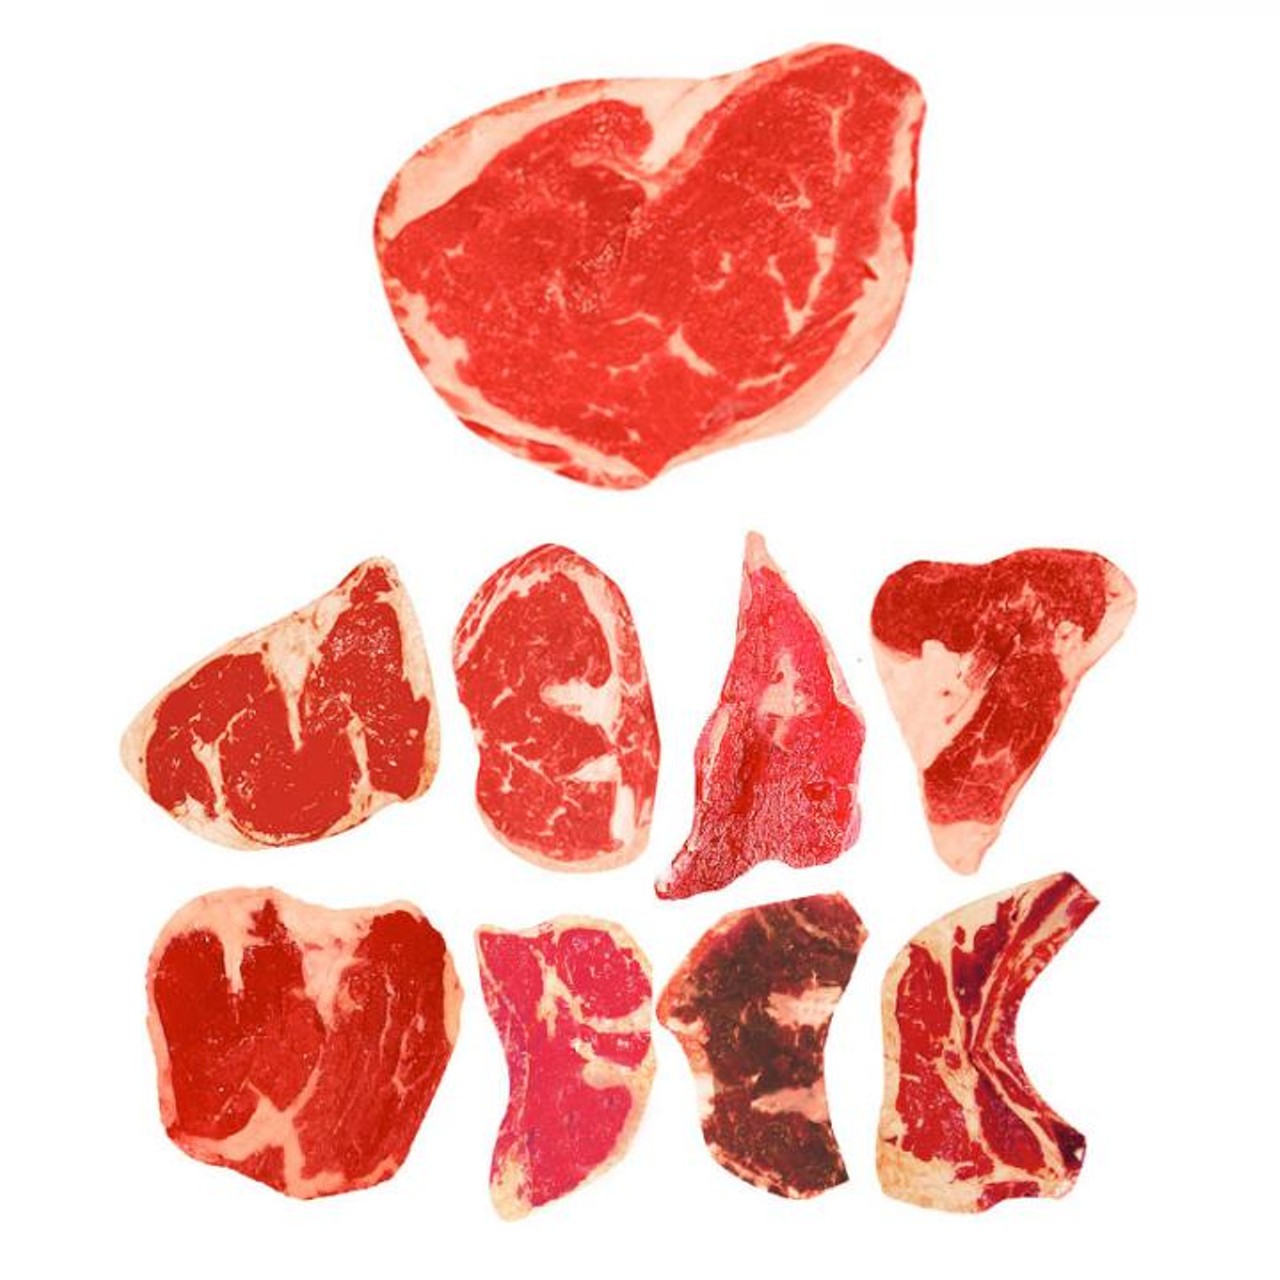 Meat Week San Antonio